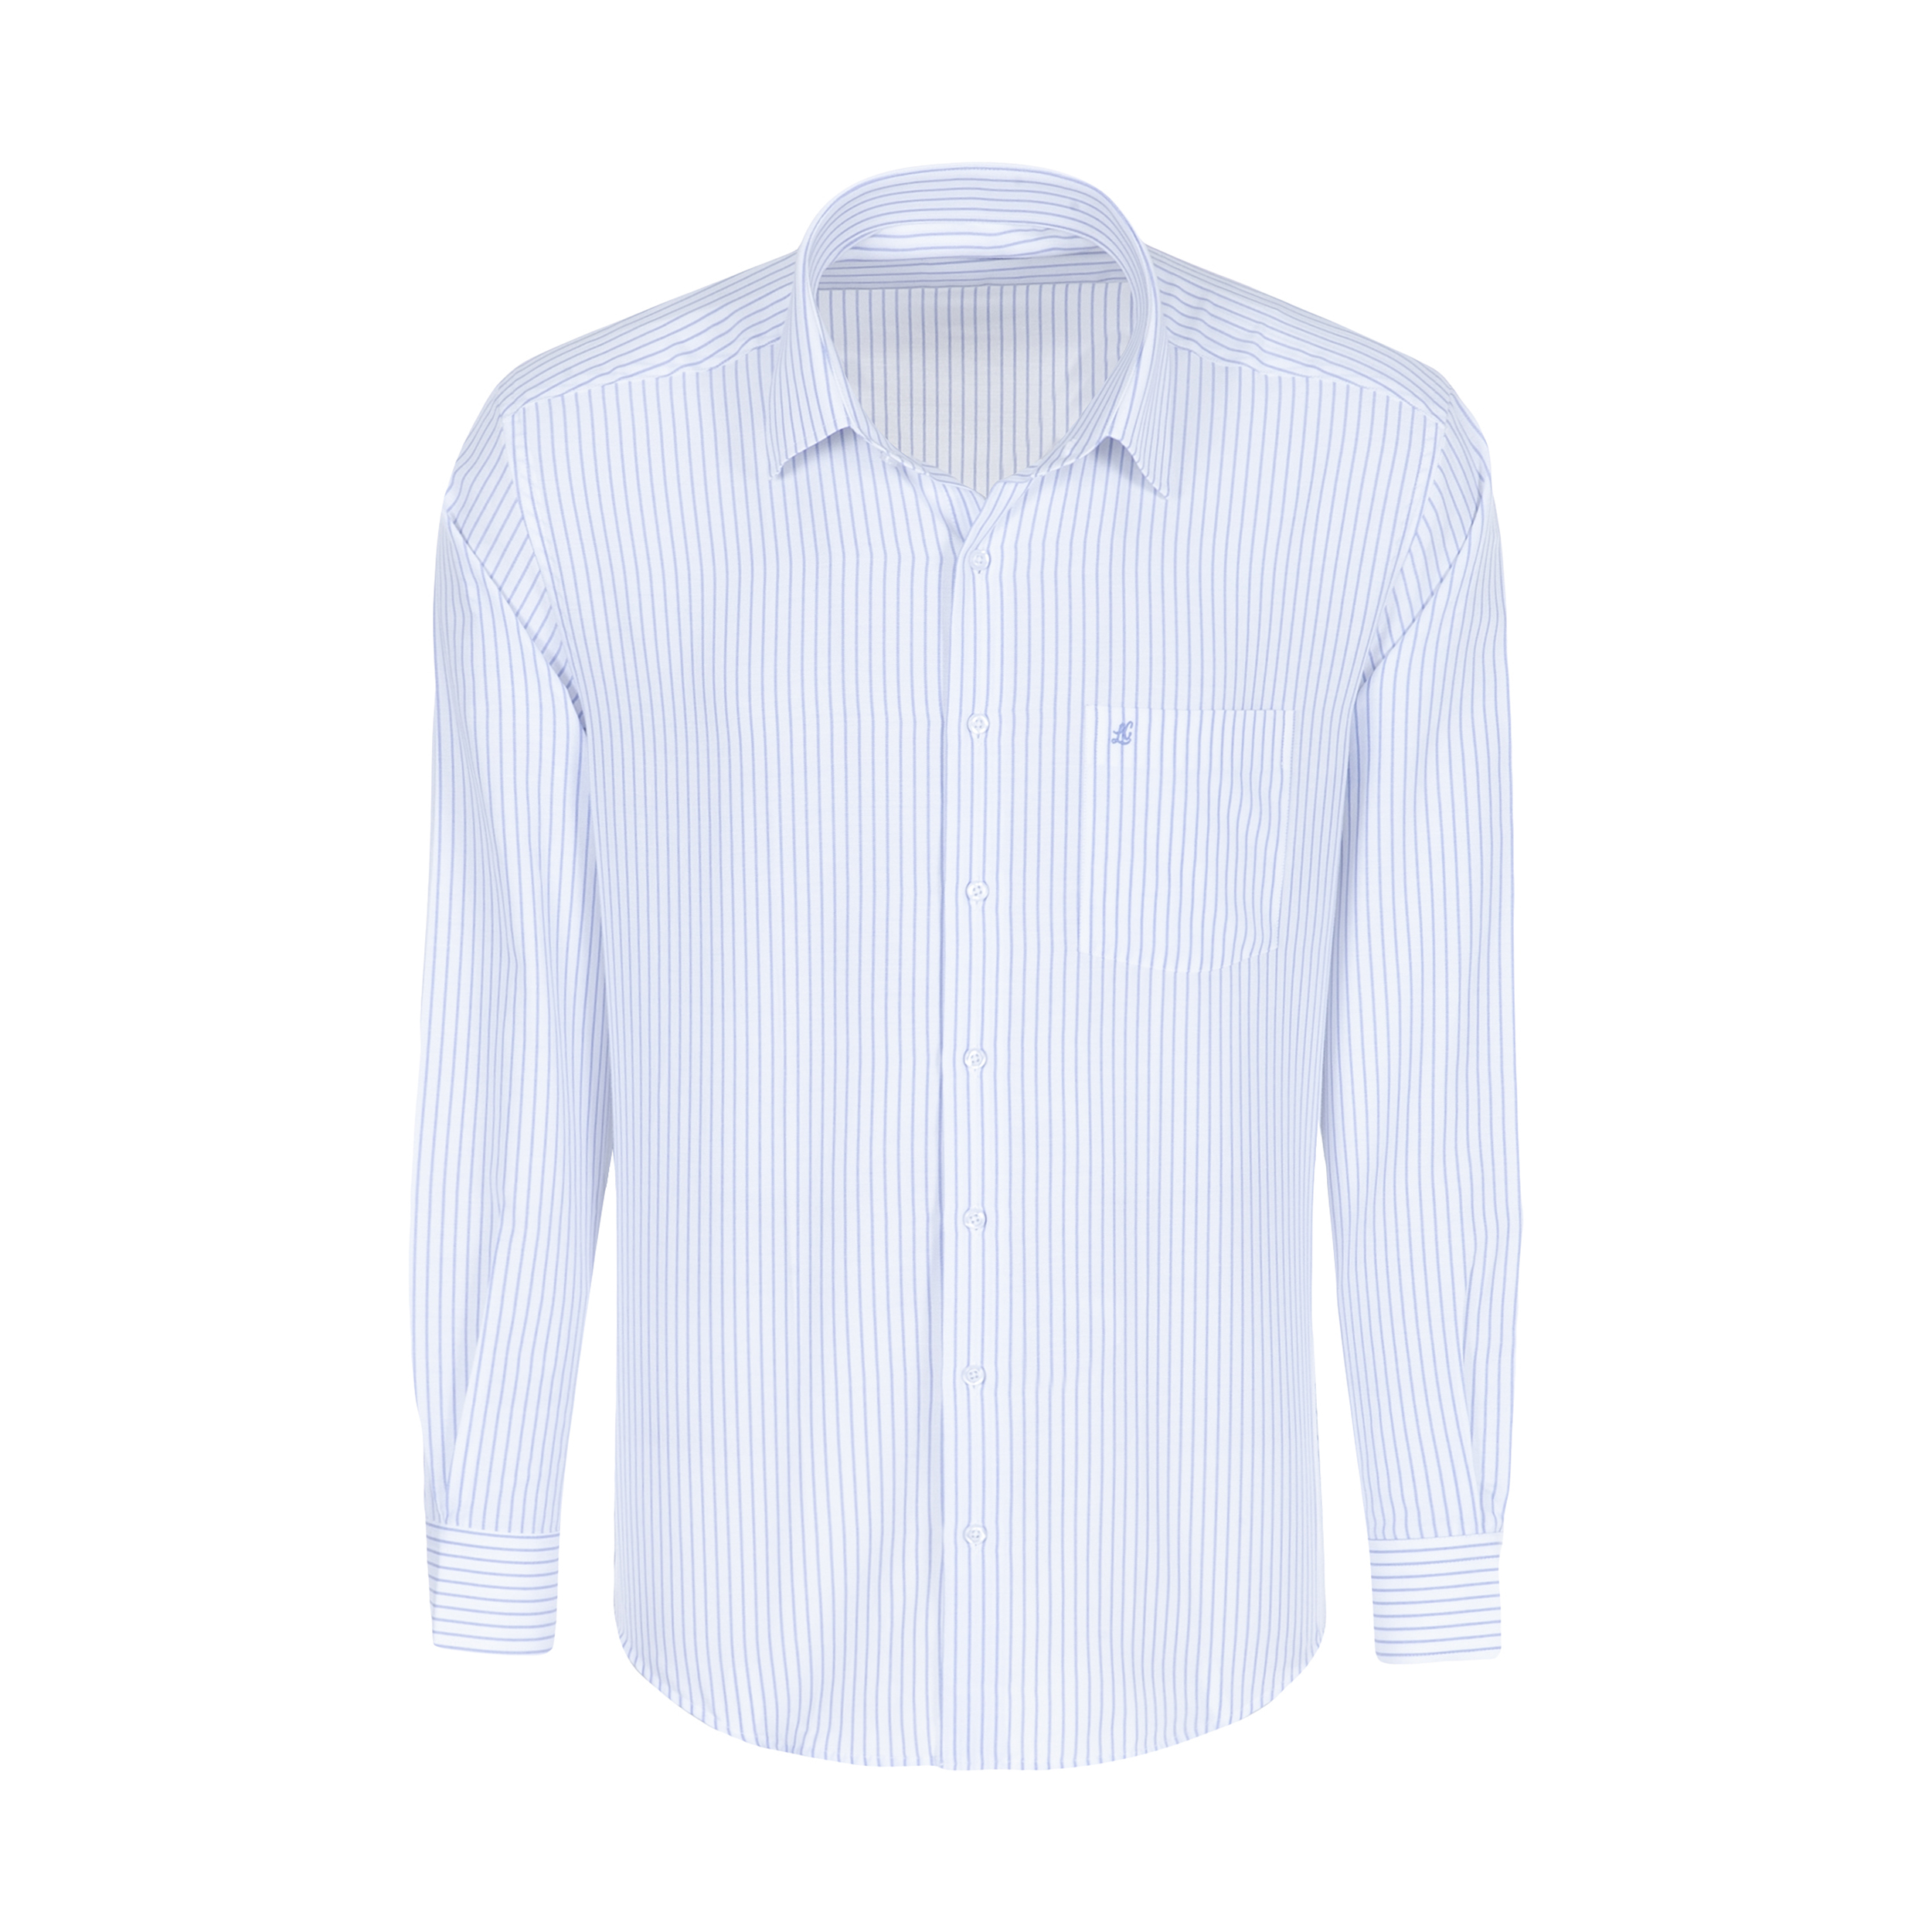 پیراهن آستین بلند مردانه ال سی من مدل 02181291-blue 175